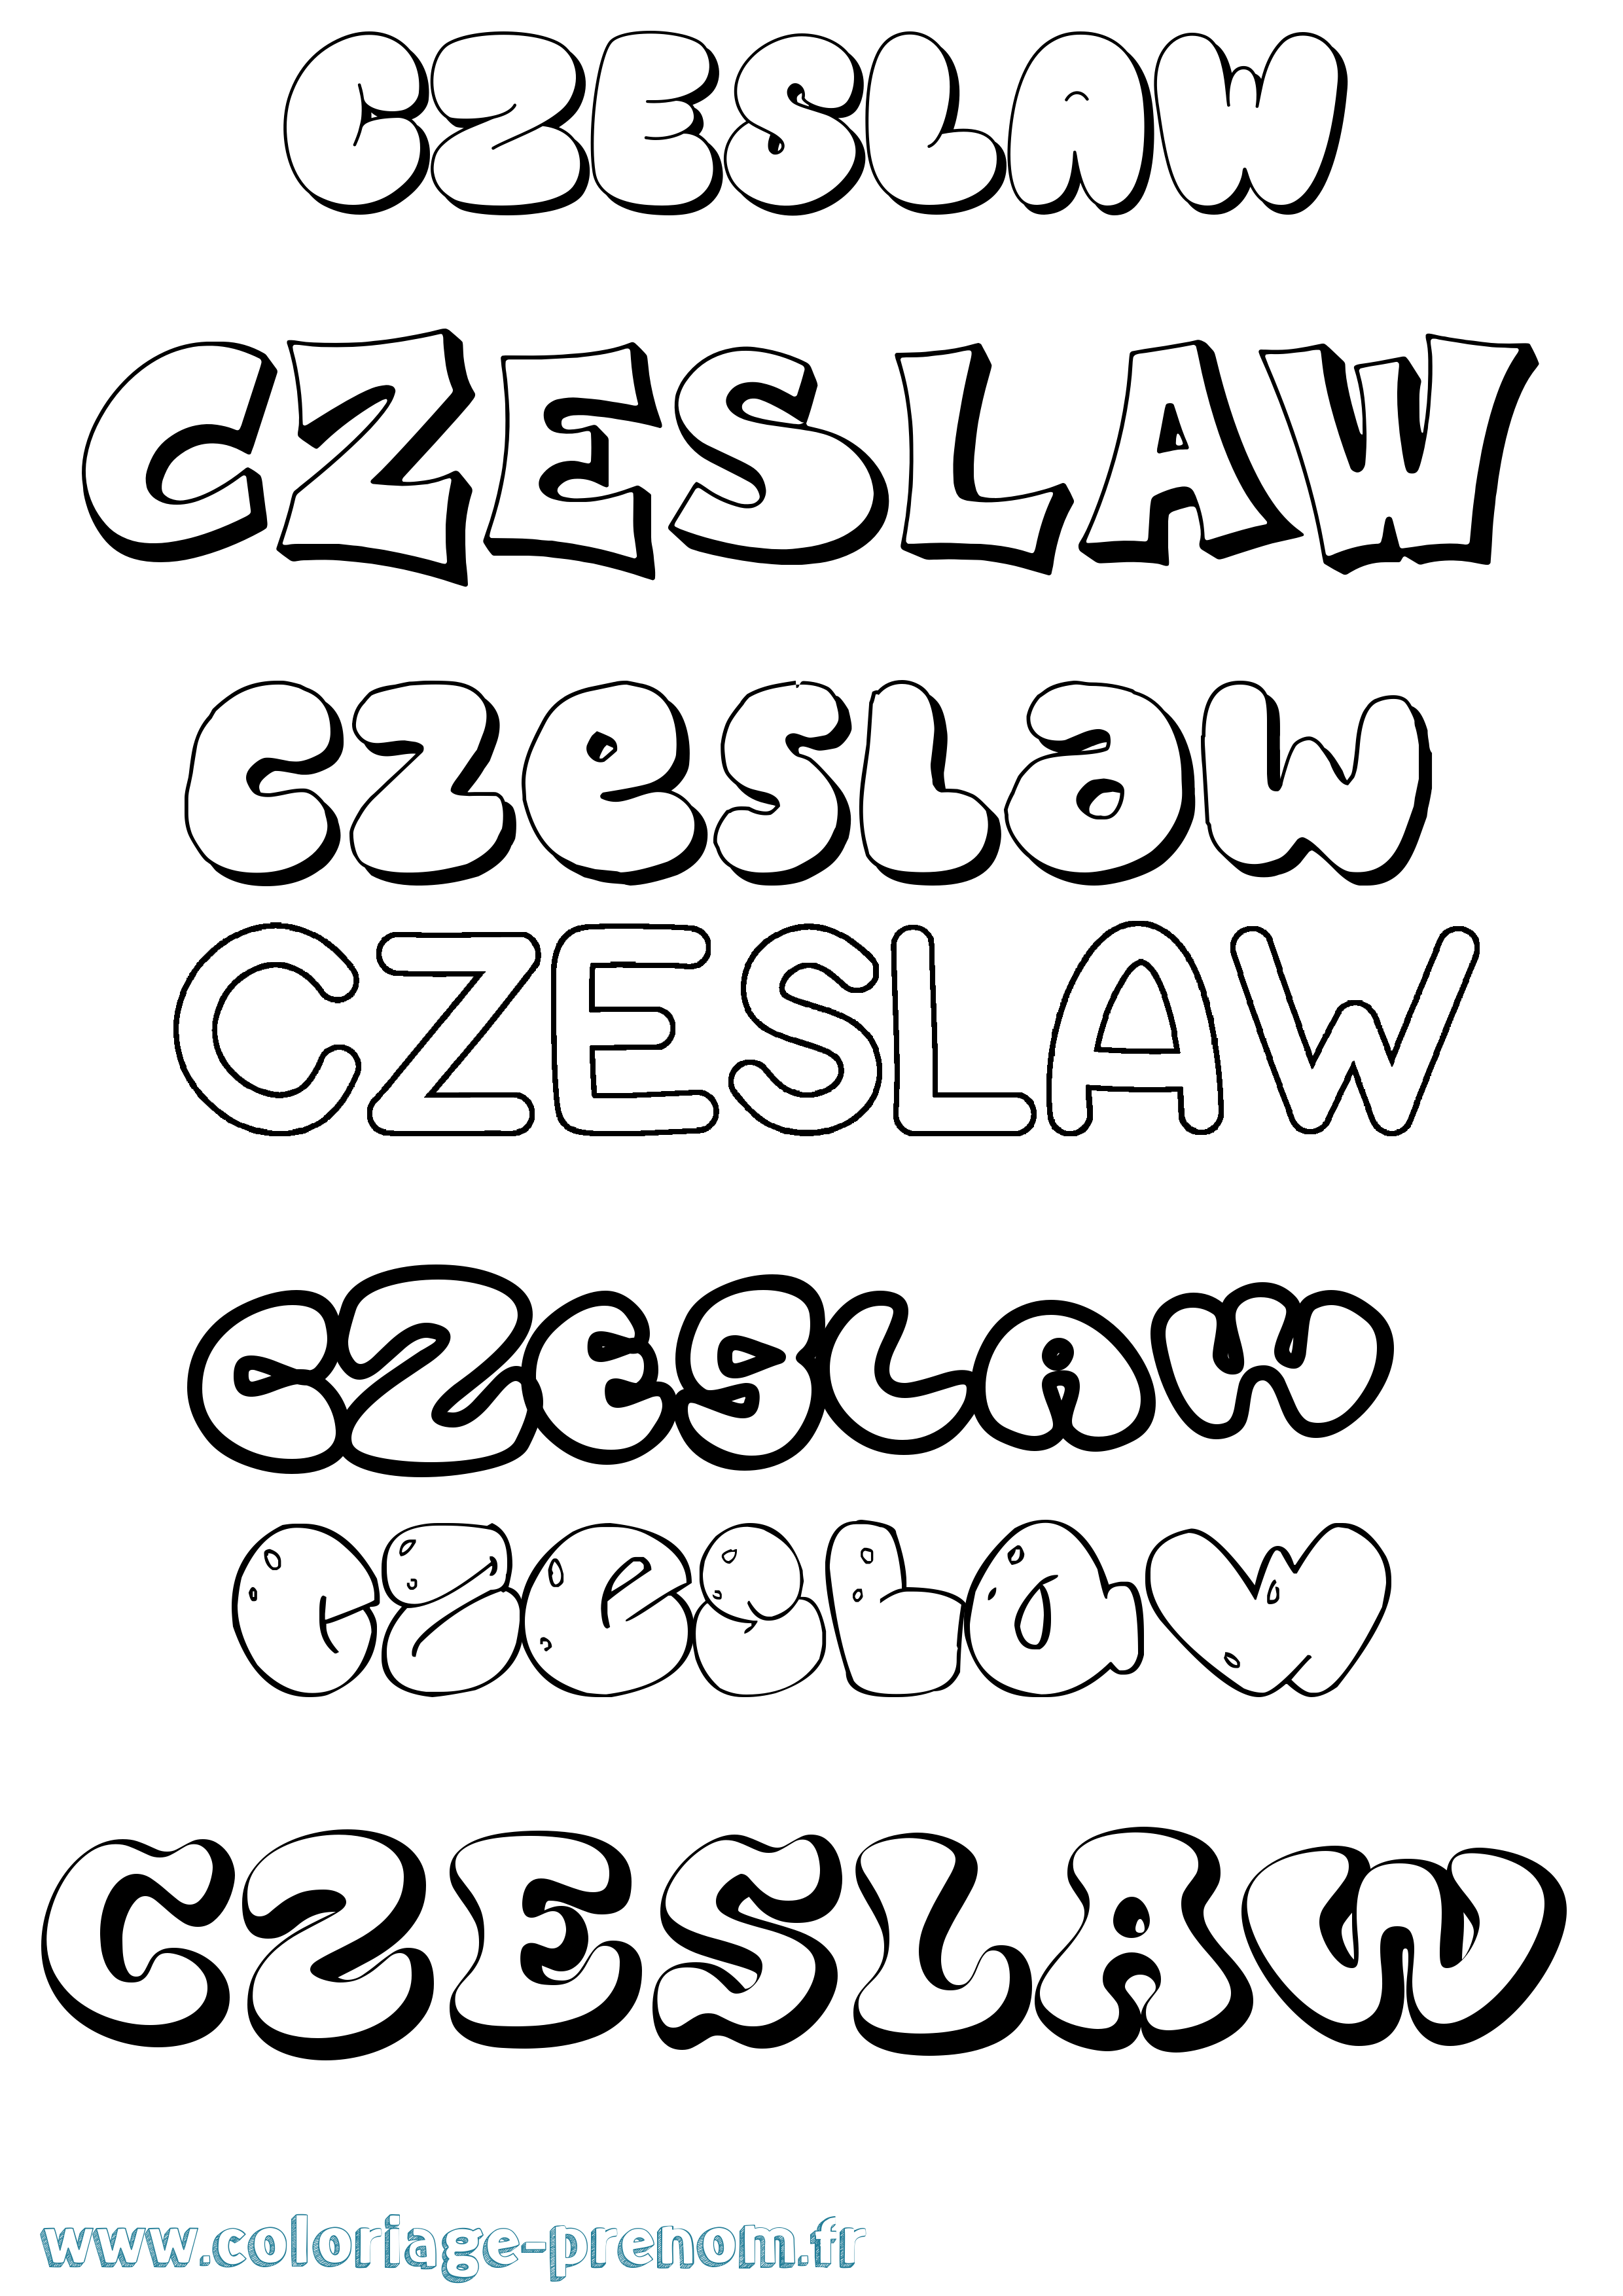 Coloriage prénom Czeslaw Bubble